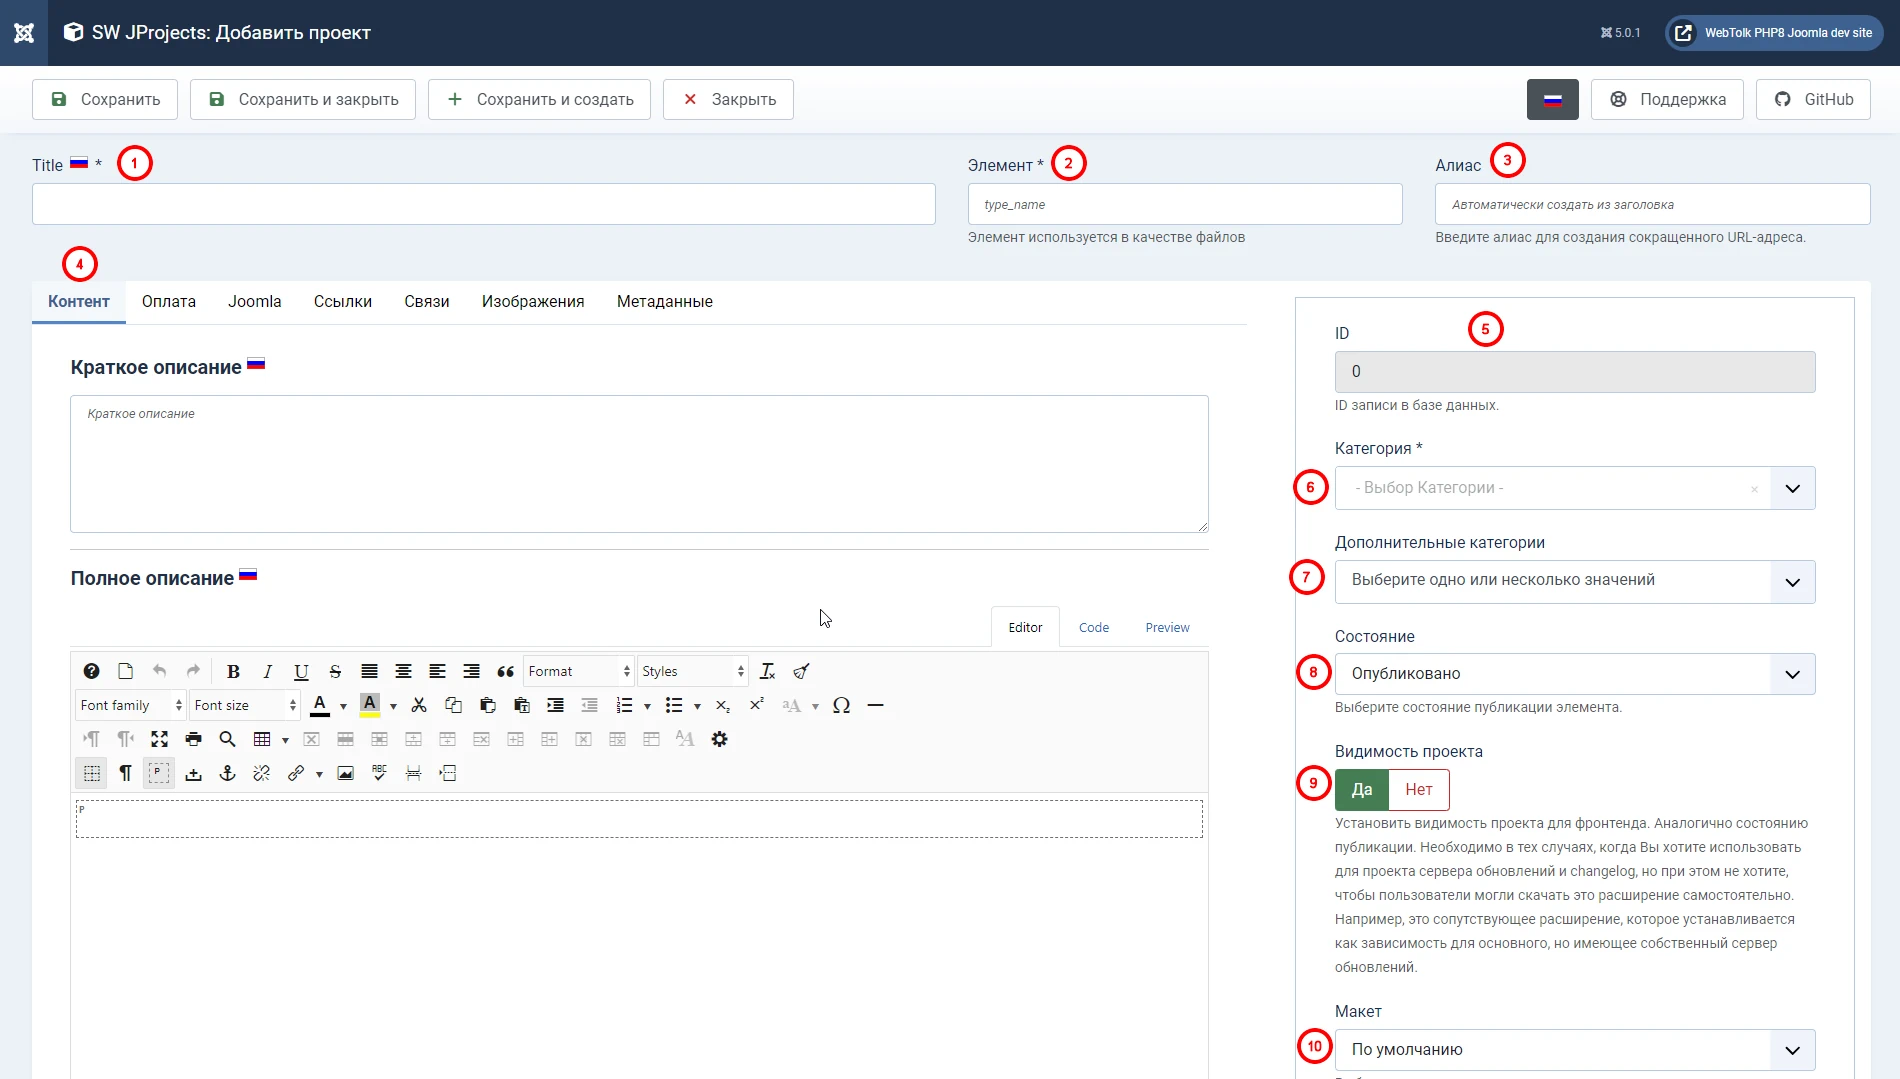 Скриншот настроек страницы создания проекта в компоненте  SW JProjects для joomla 